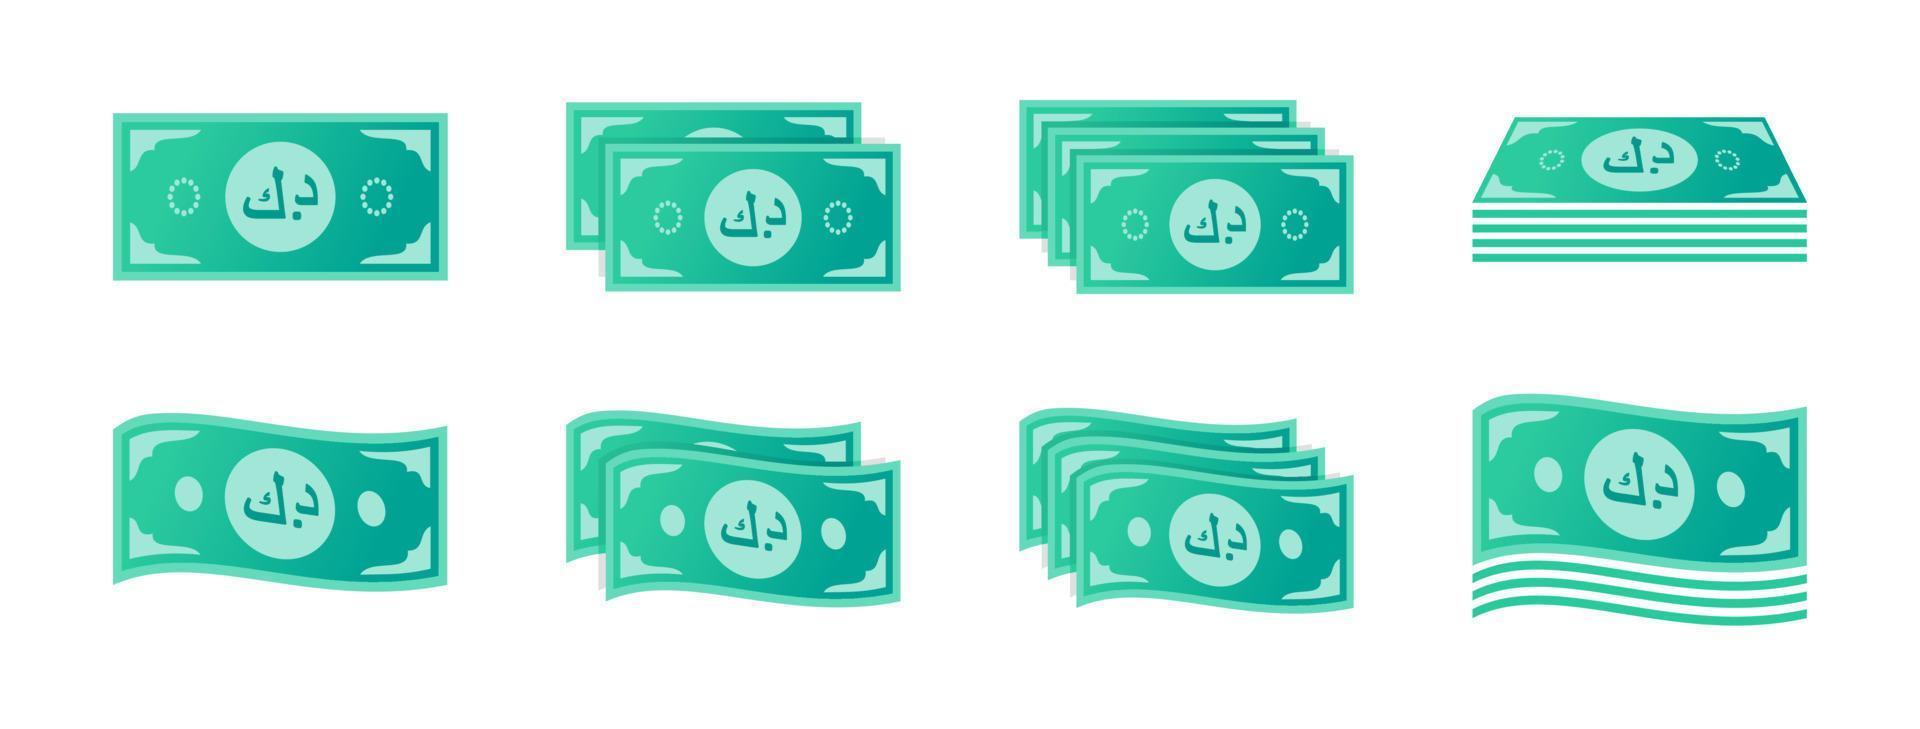 kuwaiti dinar sedel ikon uppsättning vektor